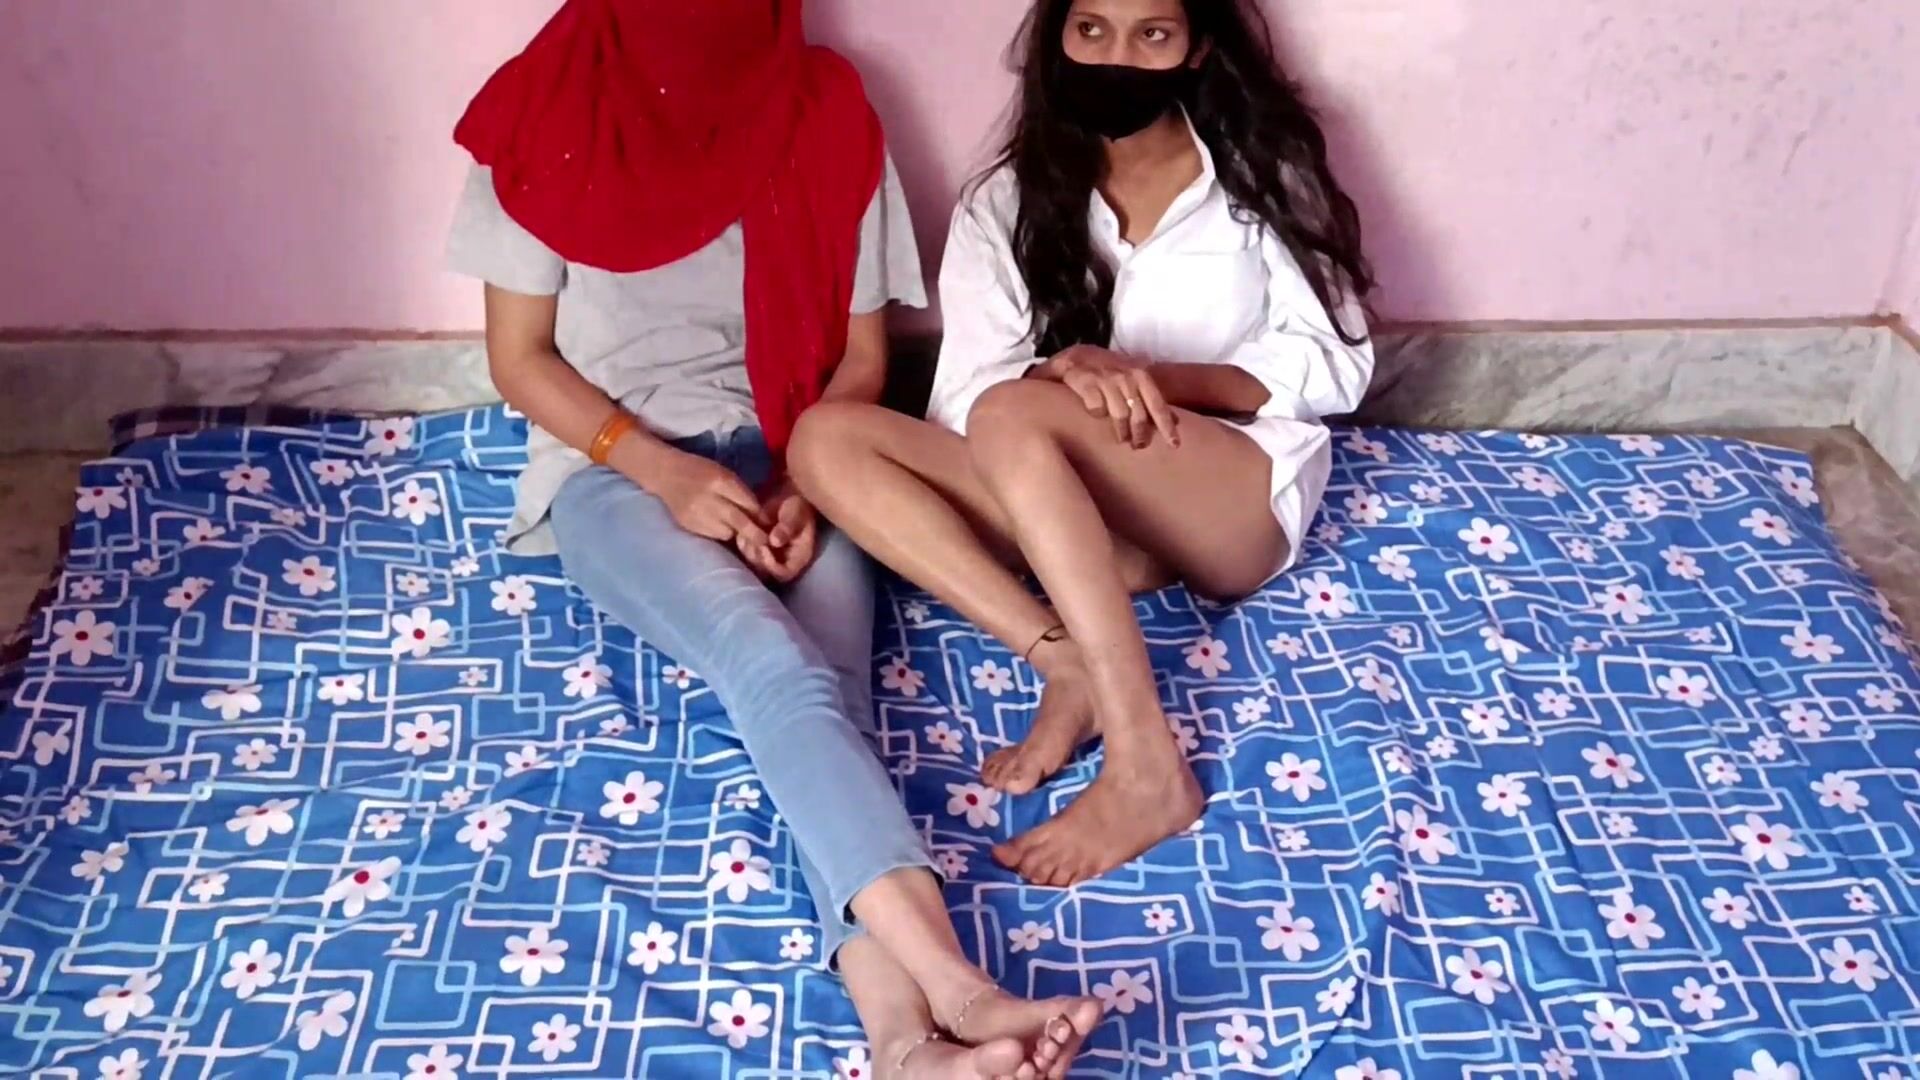 Muslim Blue Bf - Muslim girl got her widowed mother fucked by Hindu boyfriend XXX Threesome  Porn watch online